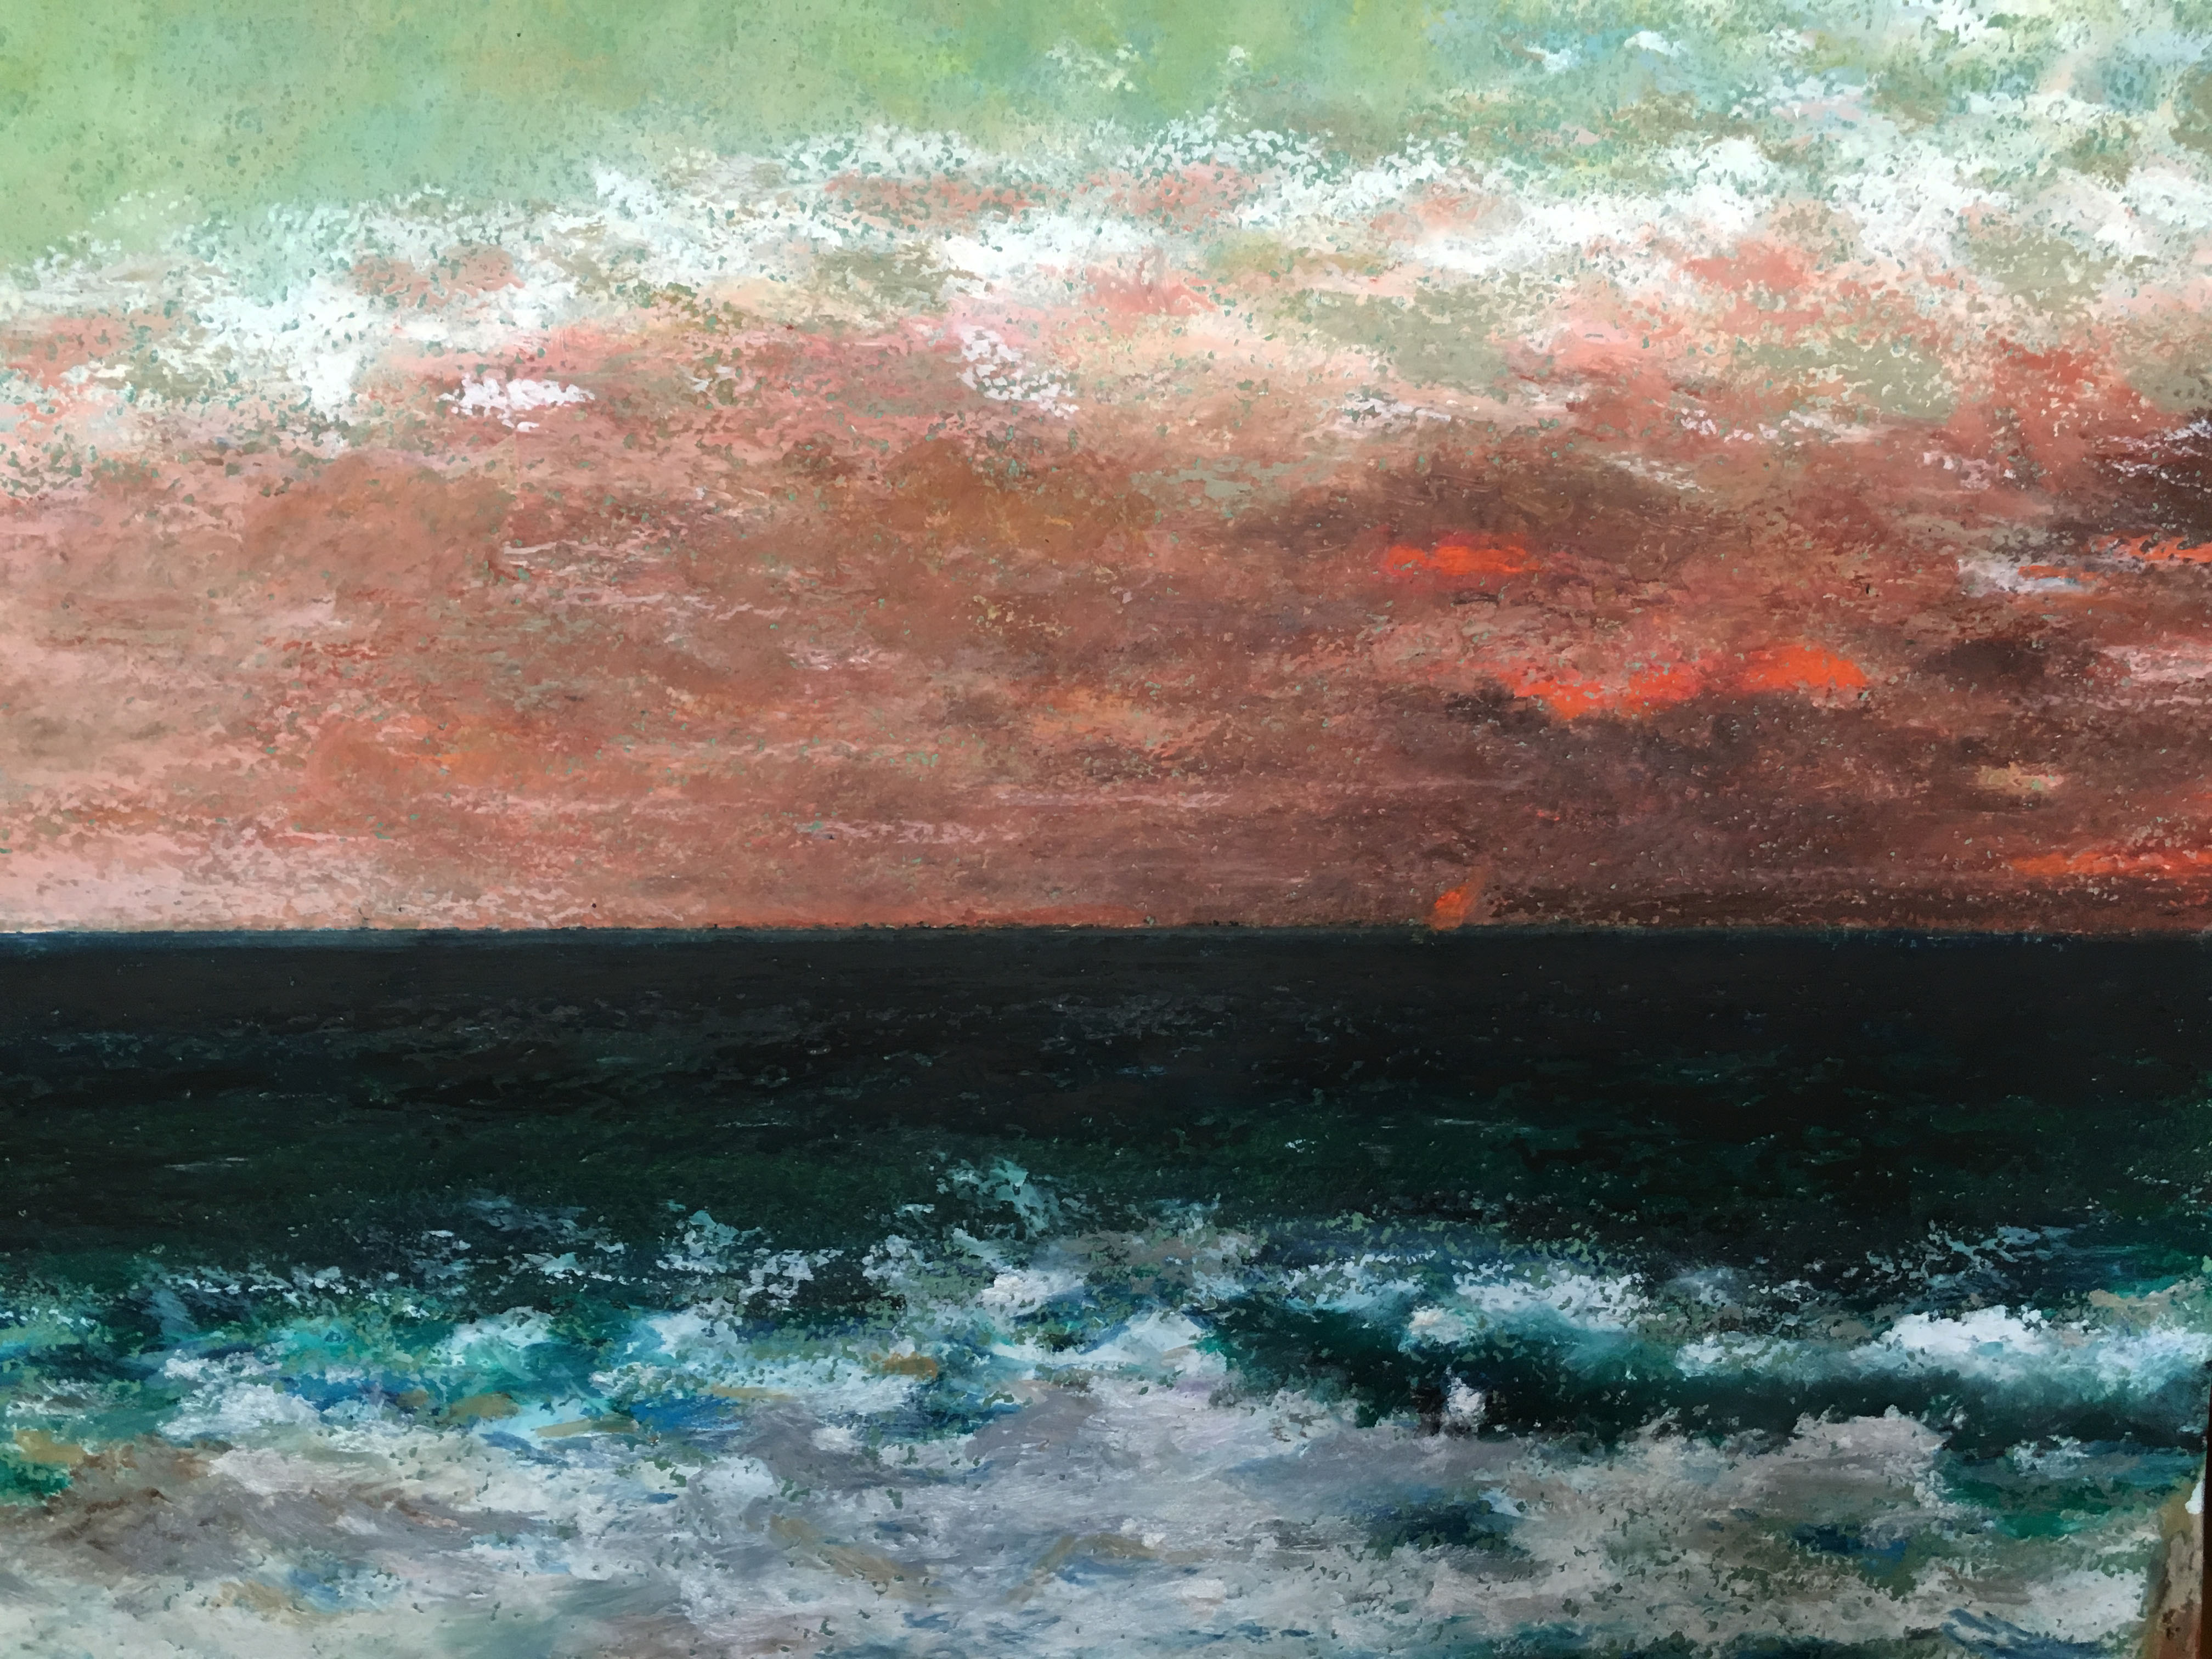 Художник Альберт Сафиуллин картина Средиземное море пастель пейзажи природы